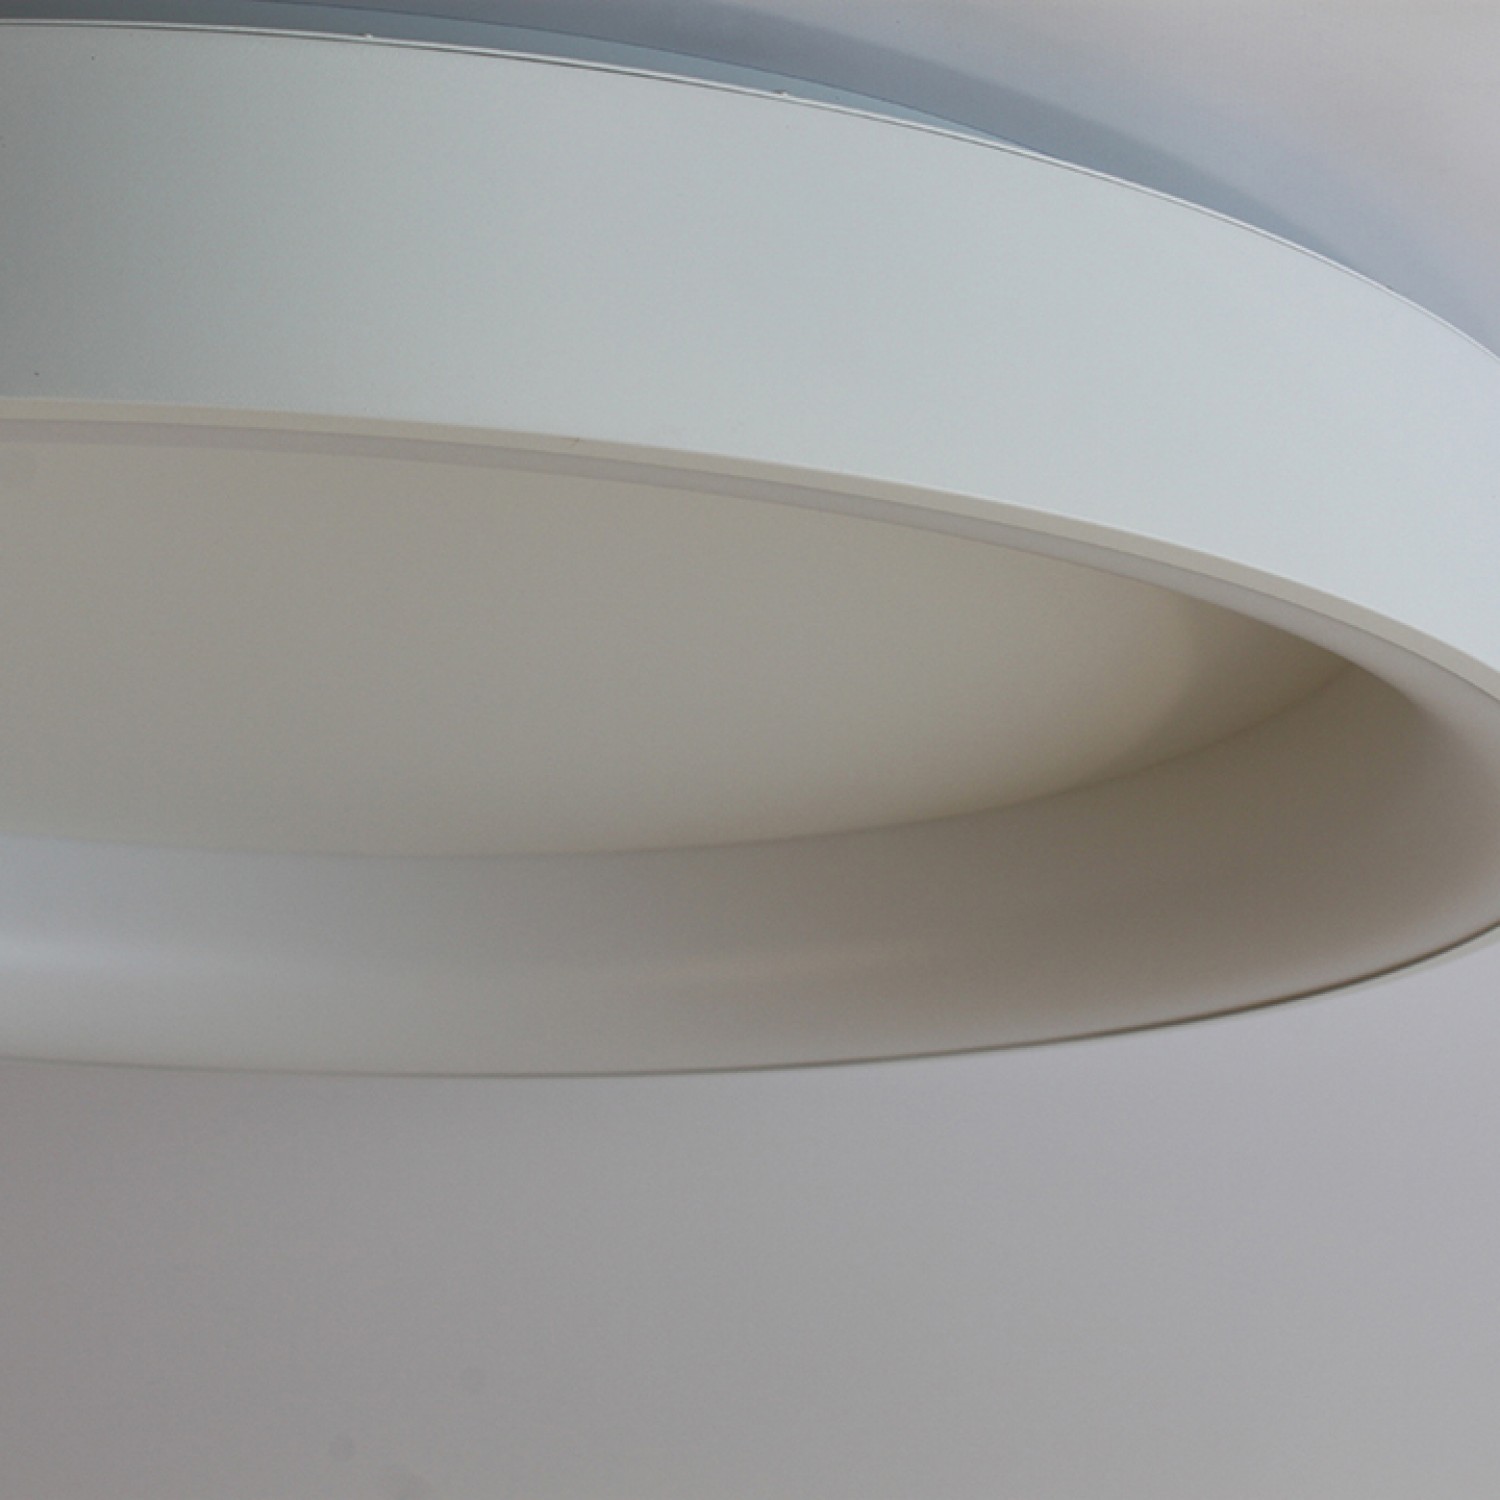 Стельовий світильник Friendlylight Rim 80 LED 3000K White FL2097